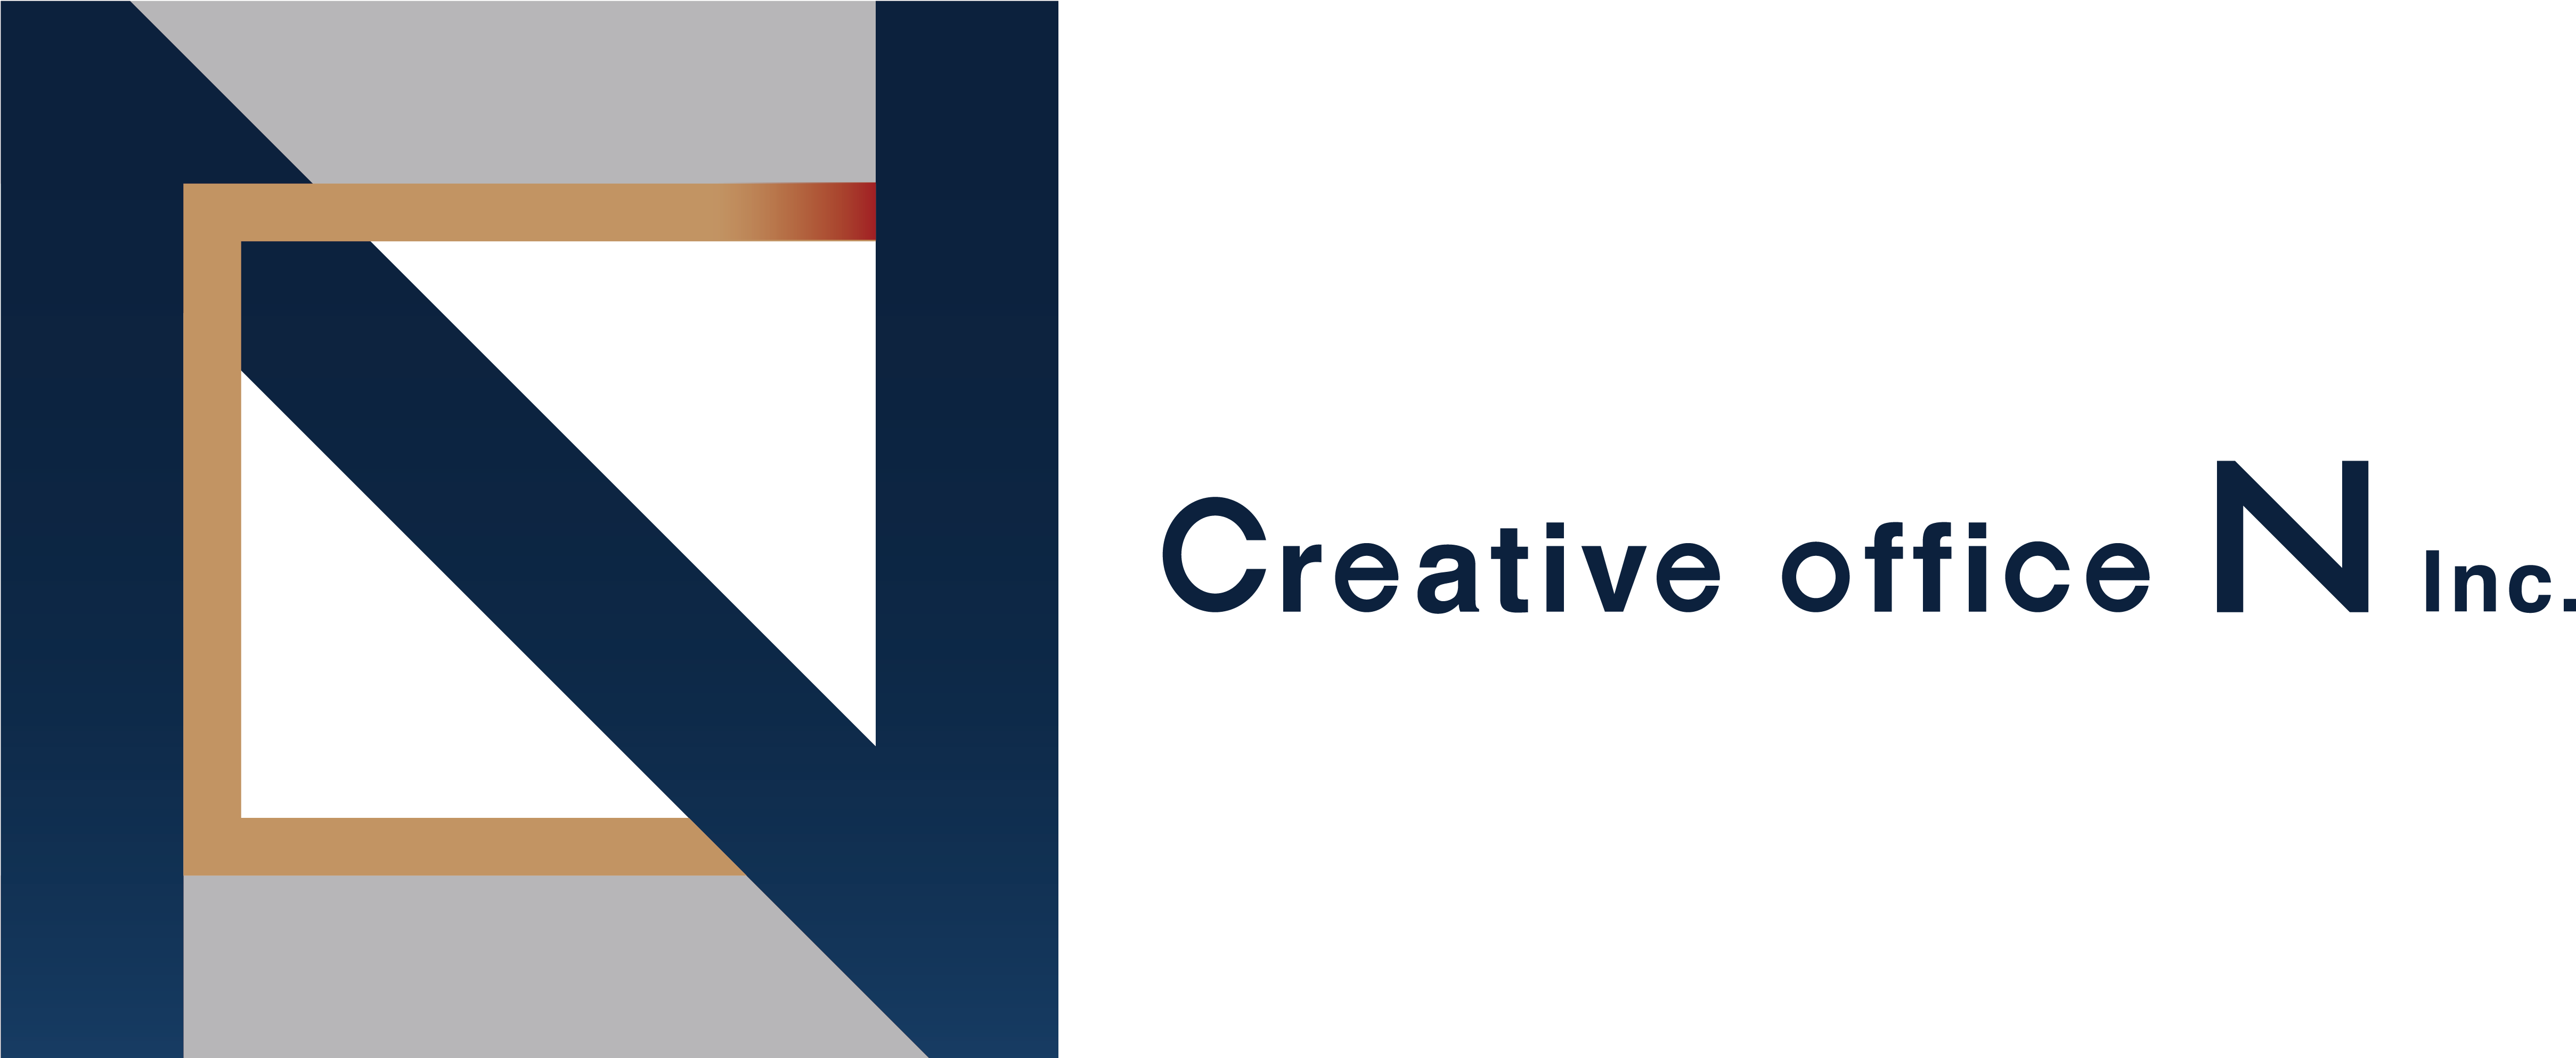 株式会社 Creative office Nの株式会社Creative office Nサービス